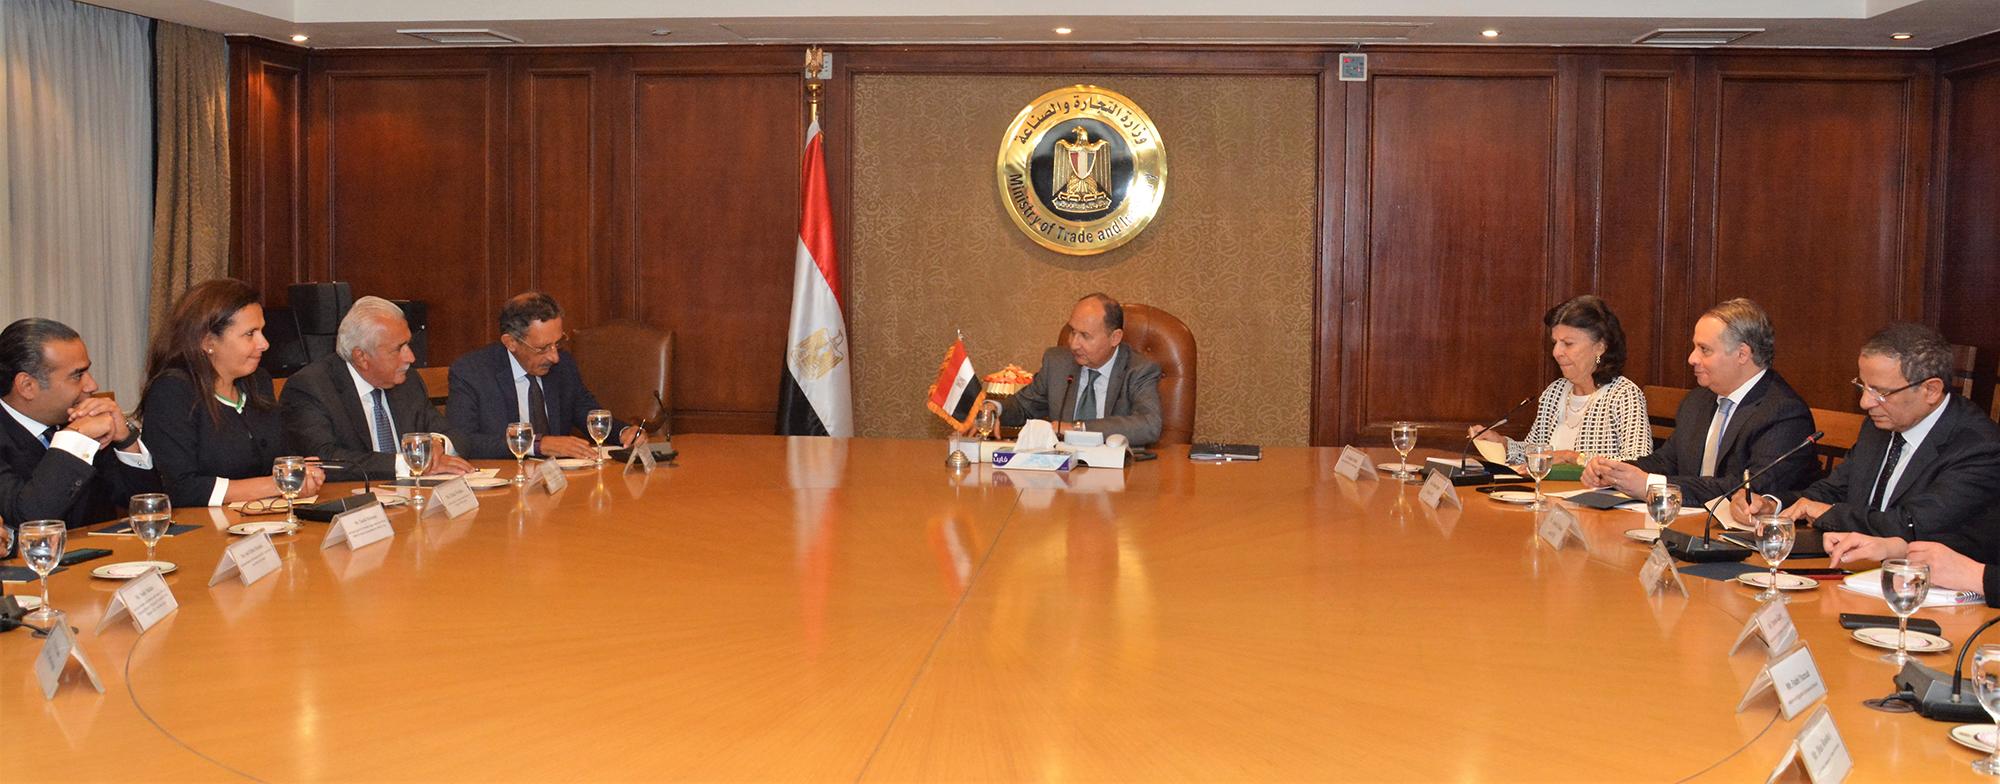   نصار يبحث مع أعضاء غرفة التجارة الأمريكية سبل تعزيز العلاقات التجارية والإستثمارية بين مصر والولايات المتحدة